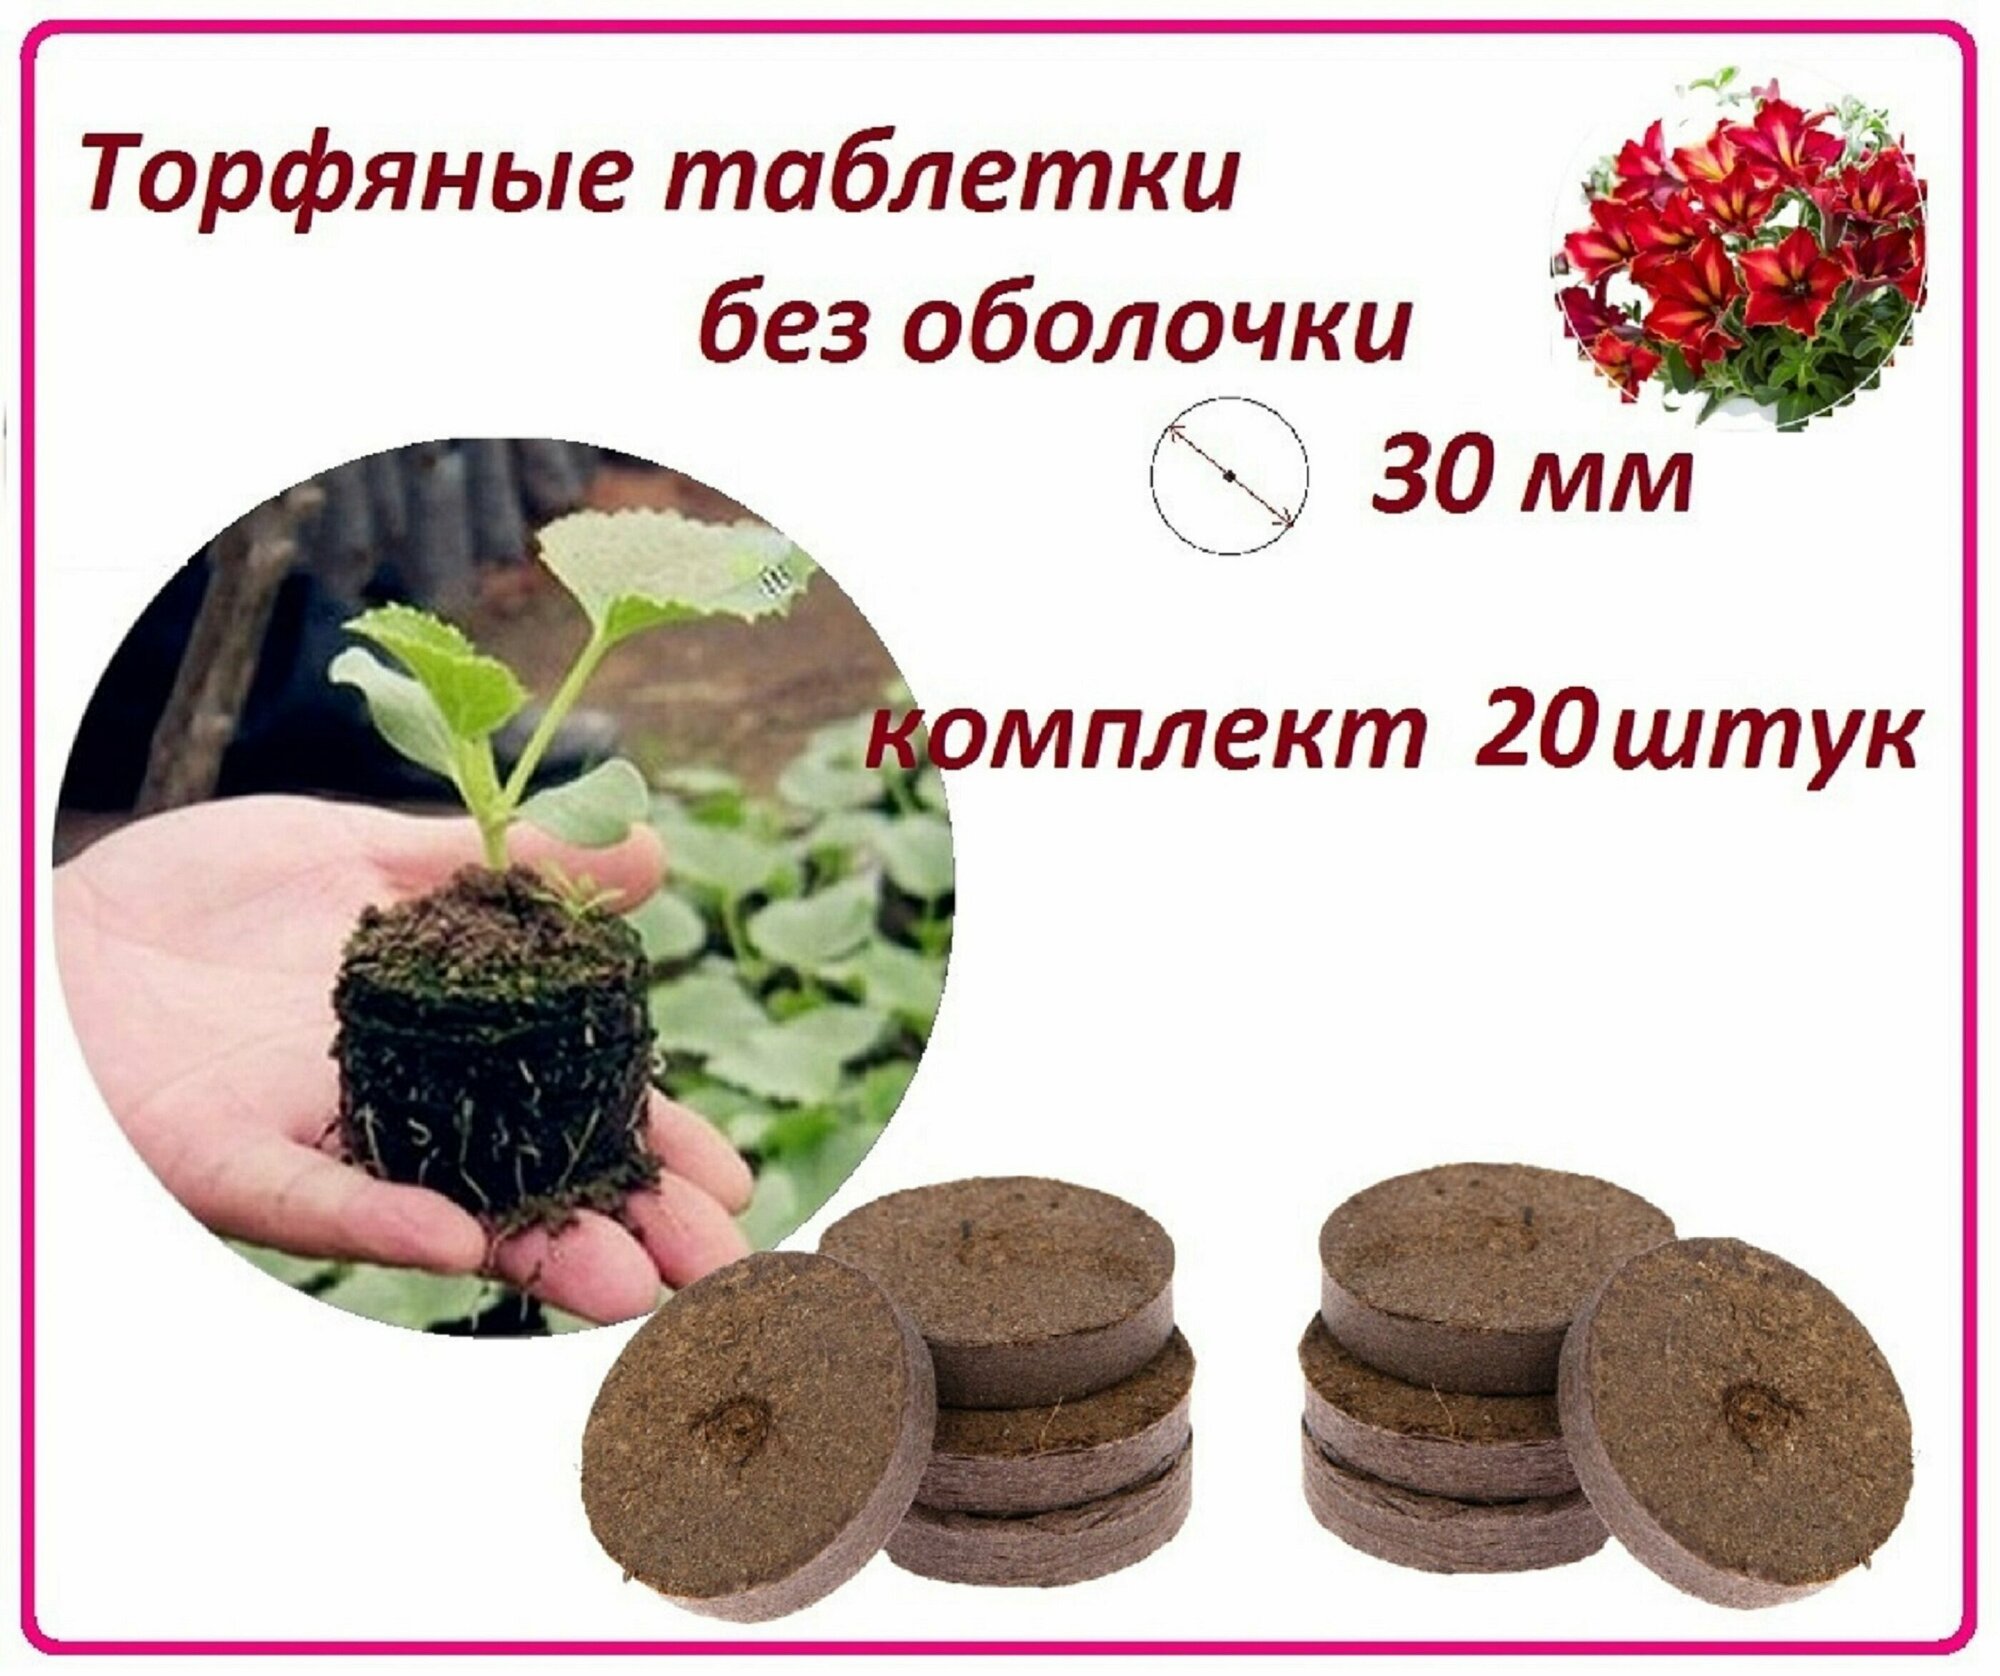 Торфяные таблетки для рассады без оболочки, 20 штук, d 30 мм, набор для проращивания любых семян овощей, цветов и растений